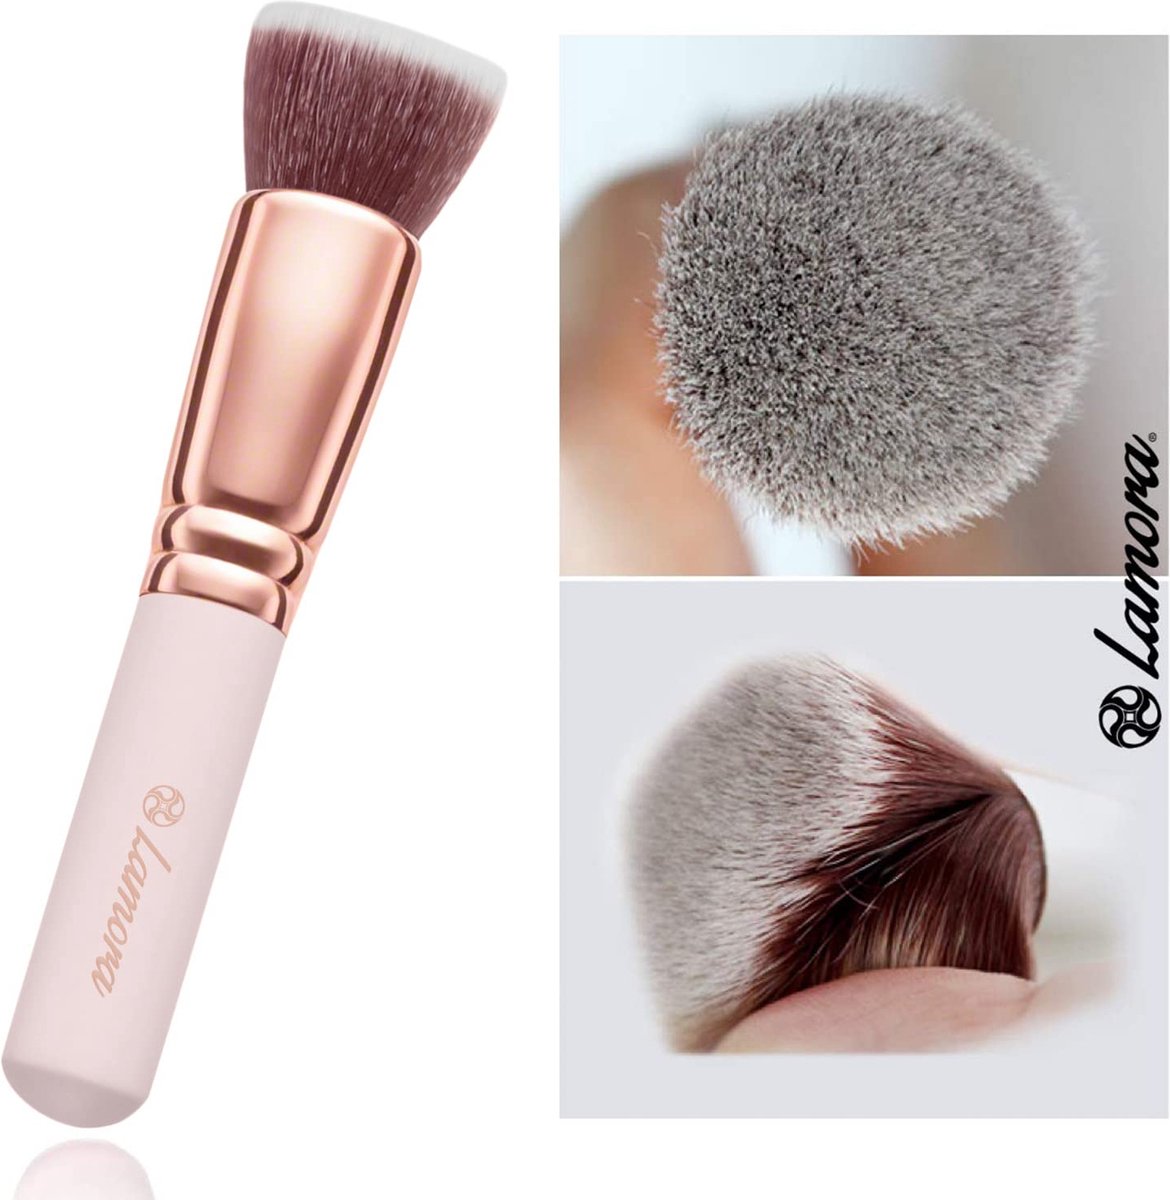 Make up brushes – set van make up kwasten – Make up kwastenset